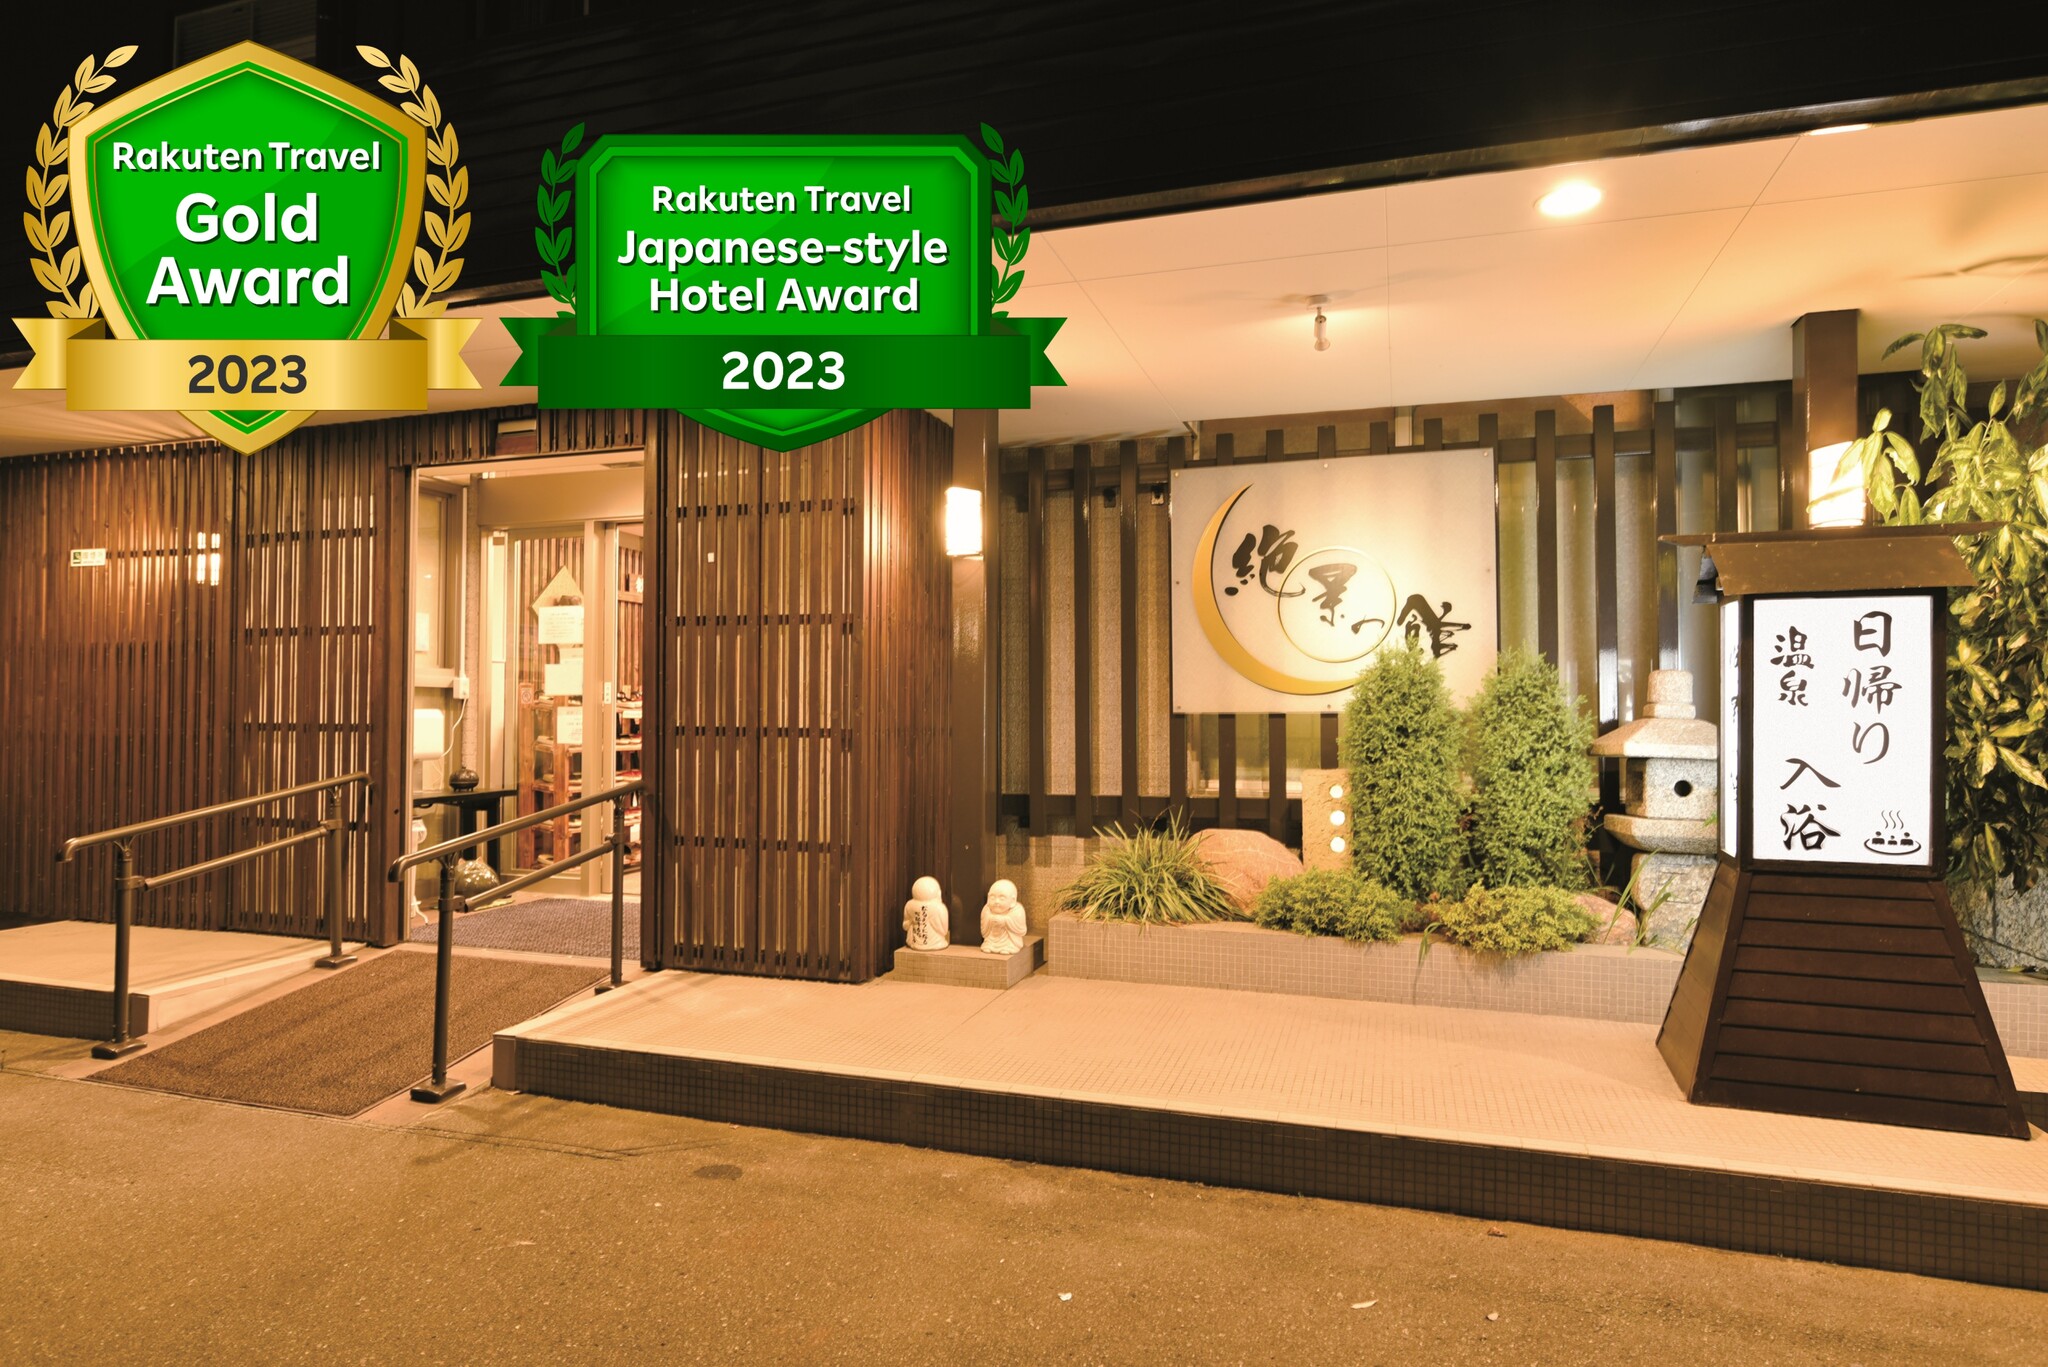 松島観光を予定しており、お勧めの観光コースと温泉宿を教えてください